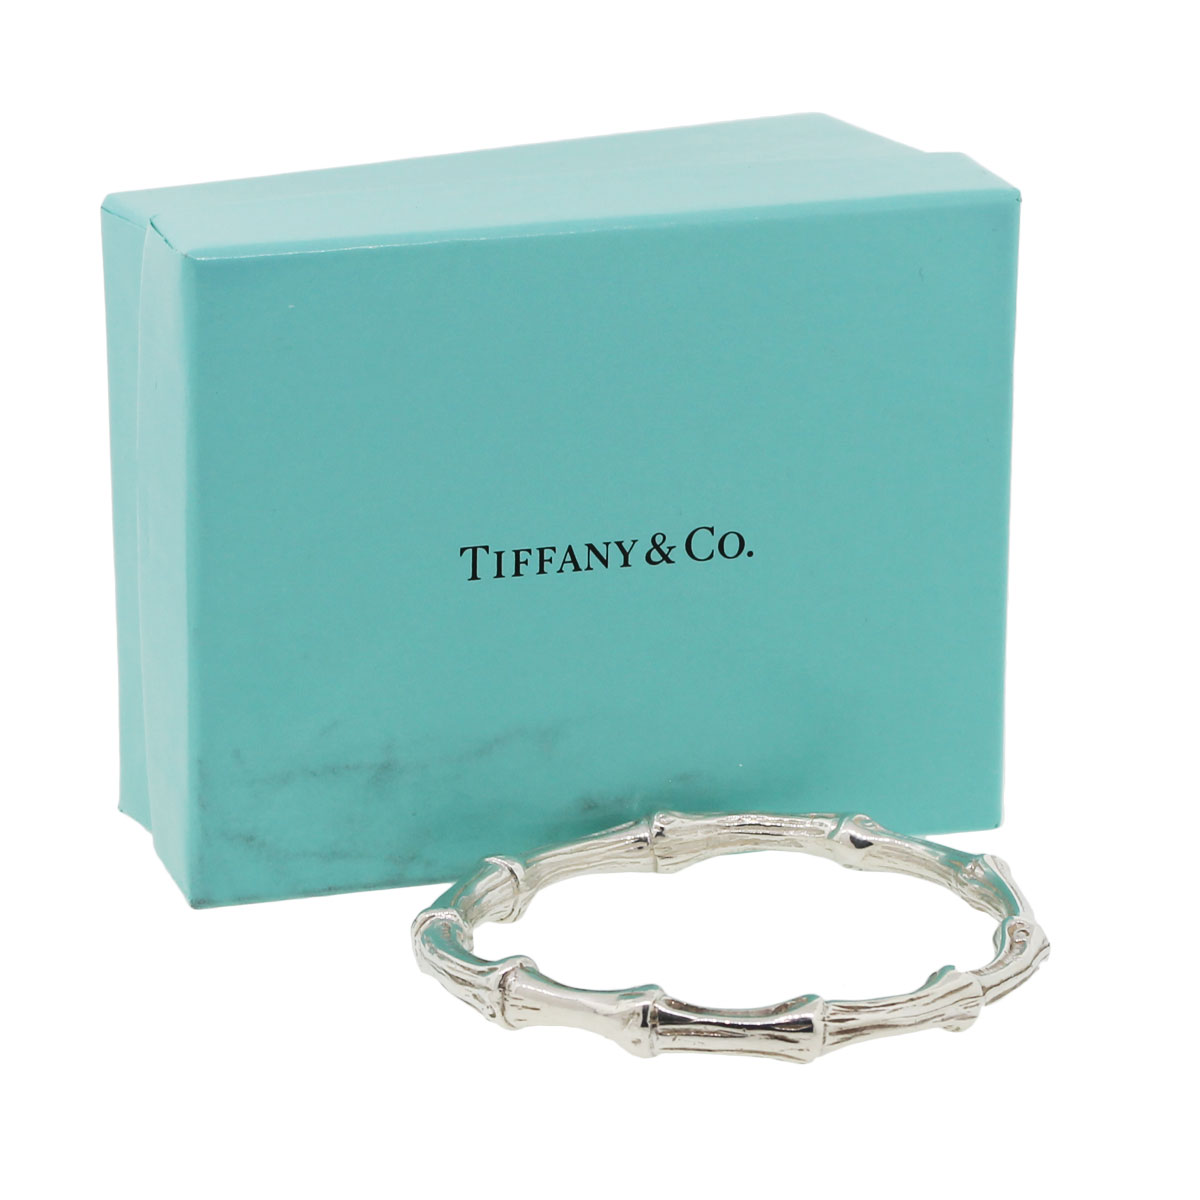 Tiffanys bracelet  Tiffany and co jewelry, Tiffany jewelry, Luxury jewelry